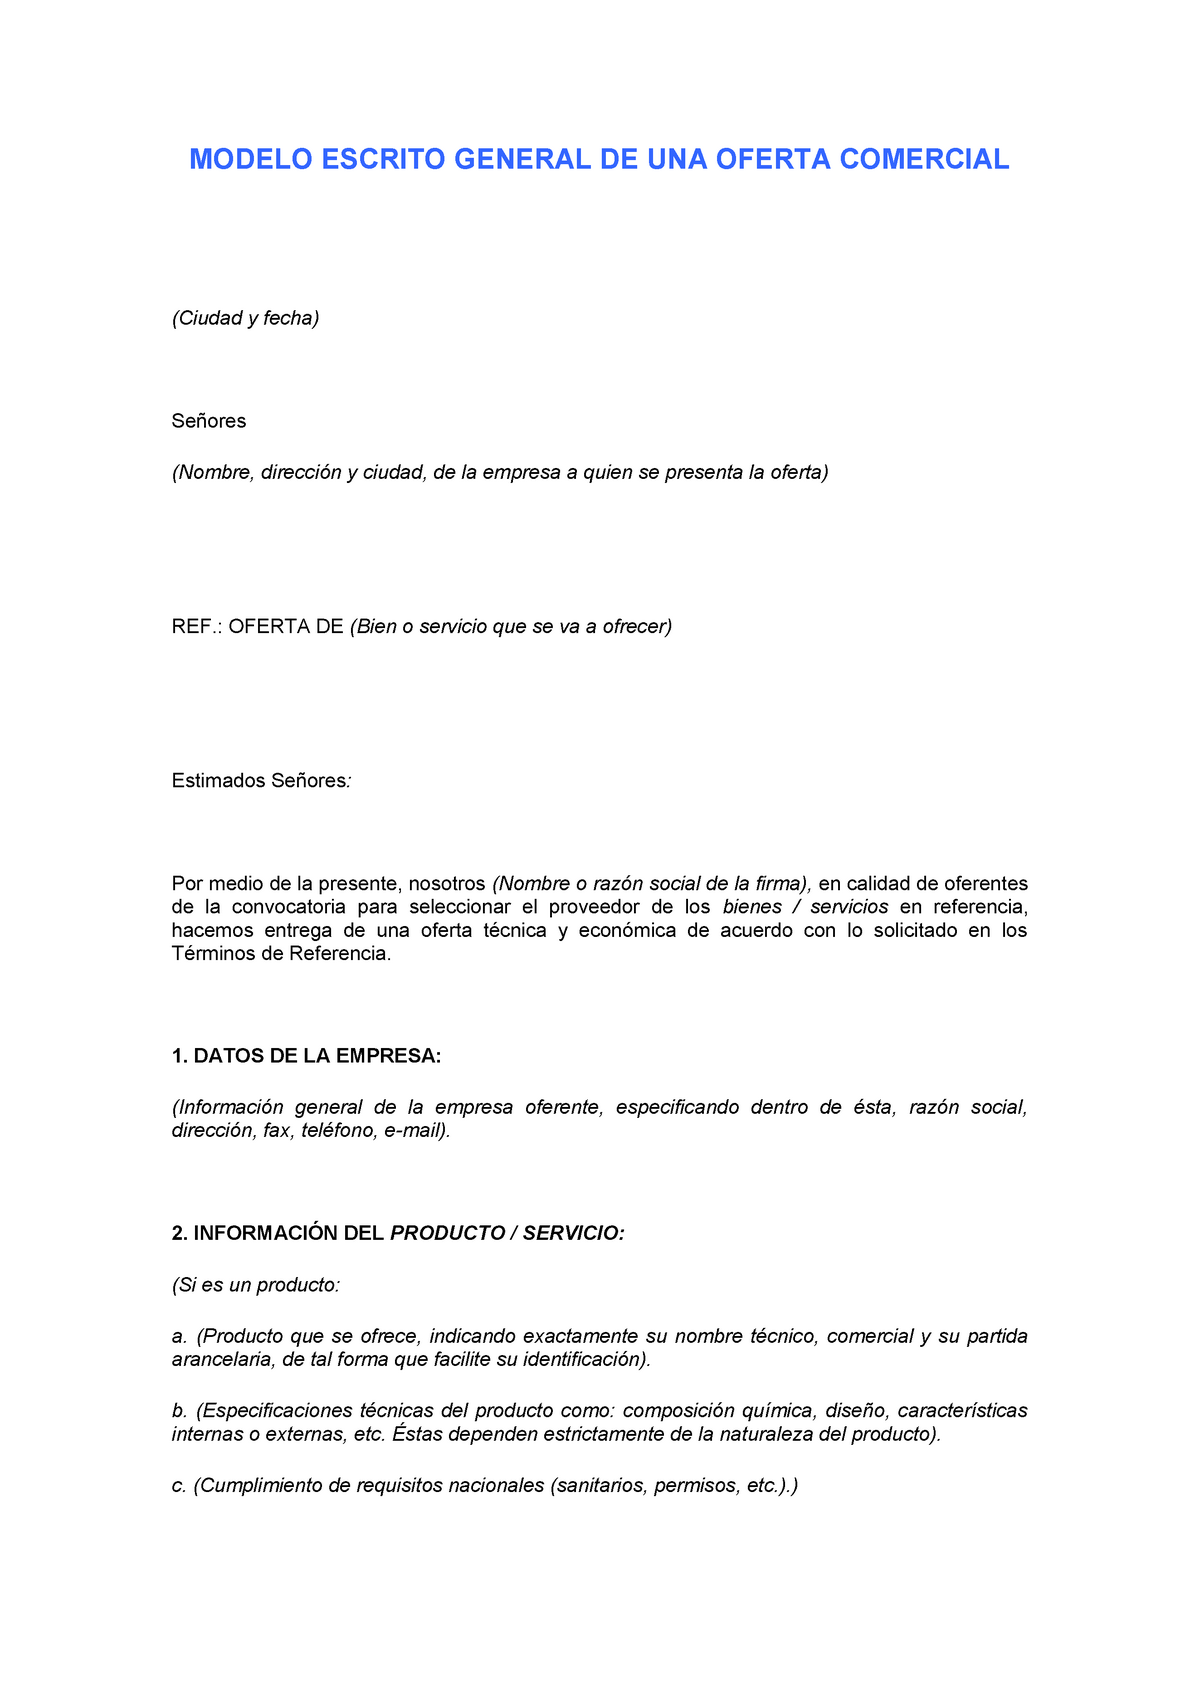 Ejemplo de propuesta comercial PDF - MODELO ESCRITO GENERAL DE UNA OFERTA  COMERCIAL (Ciudad y fecha) - Studocu